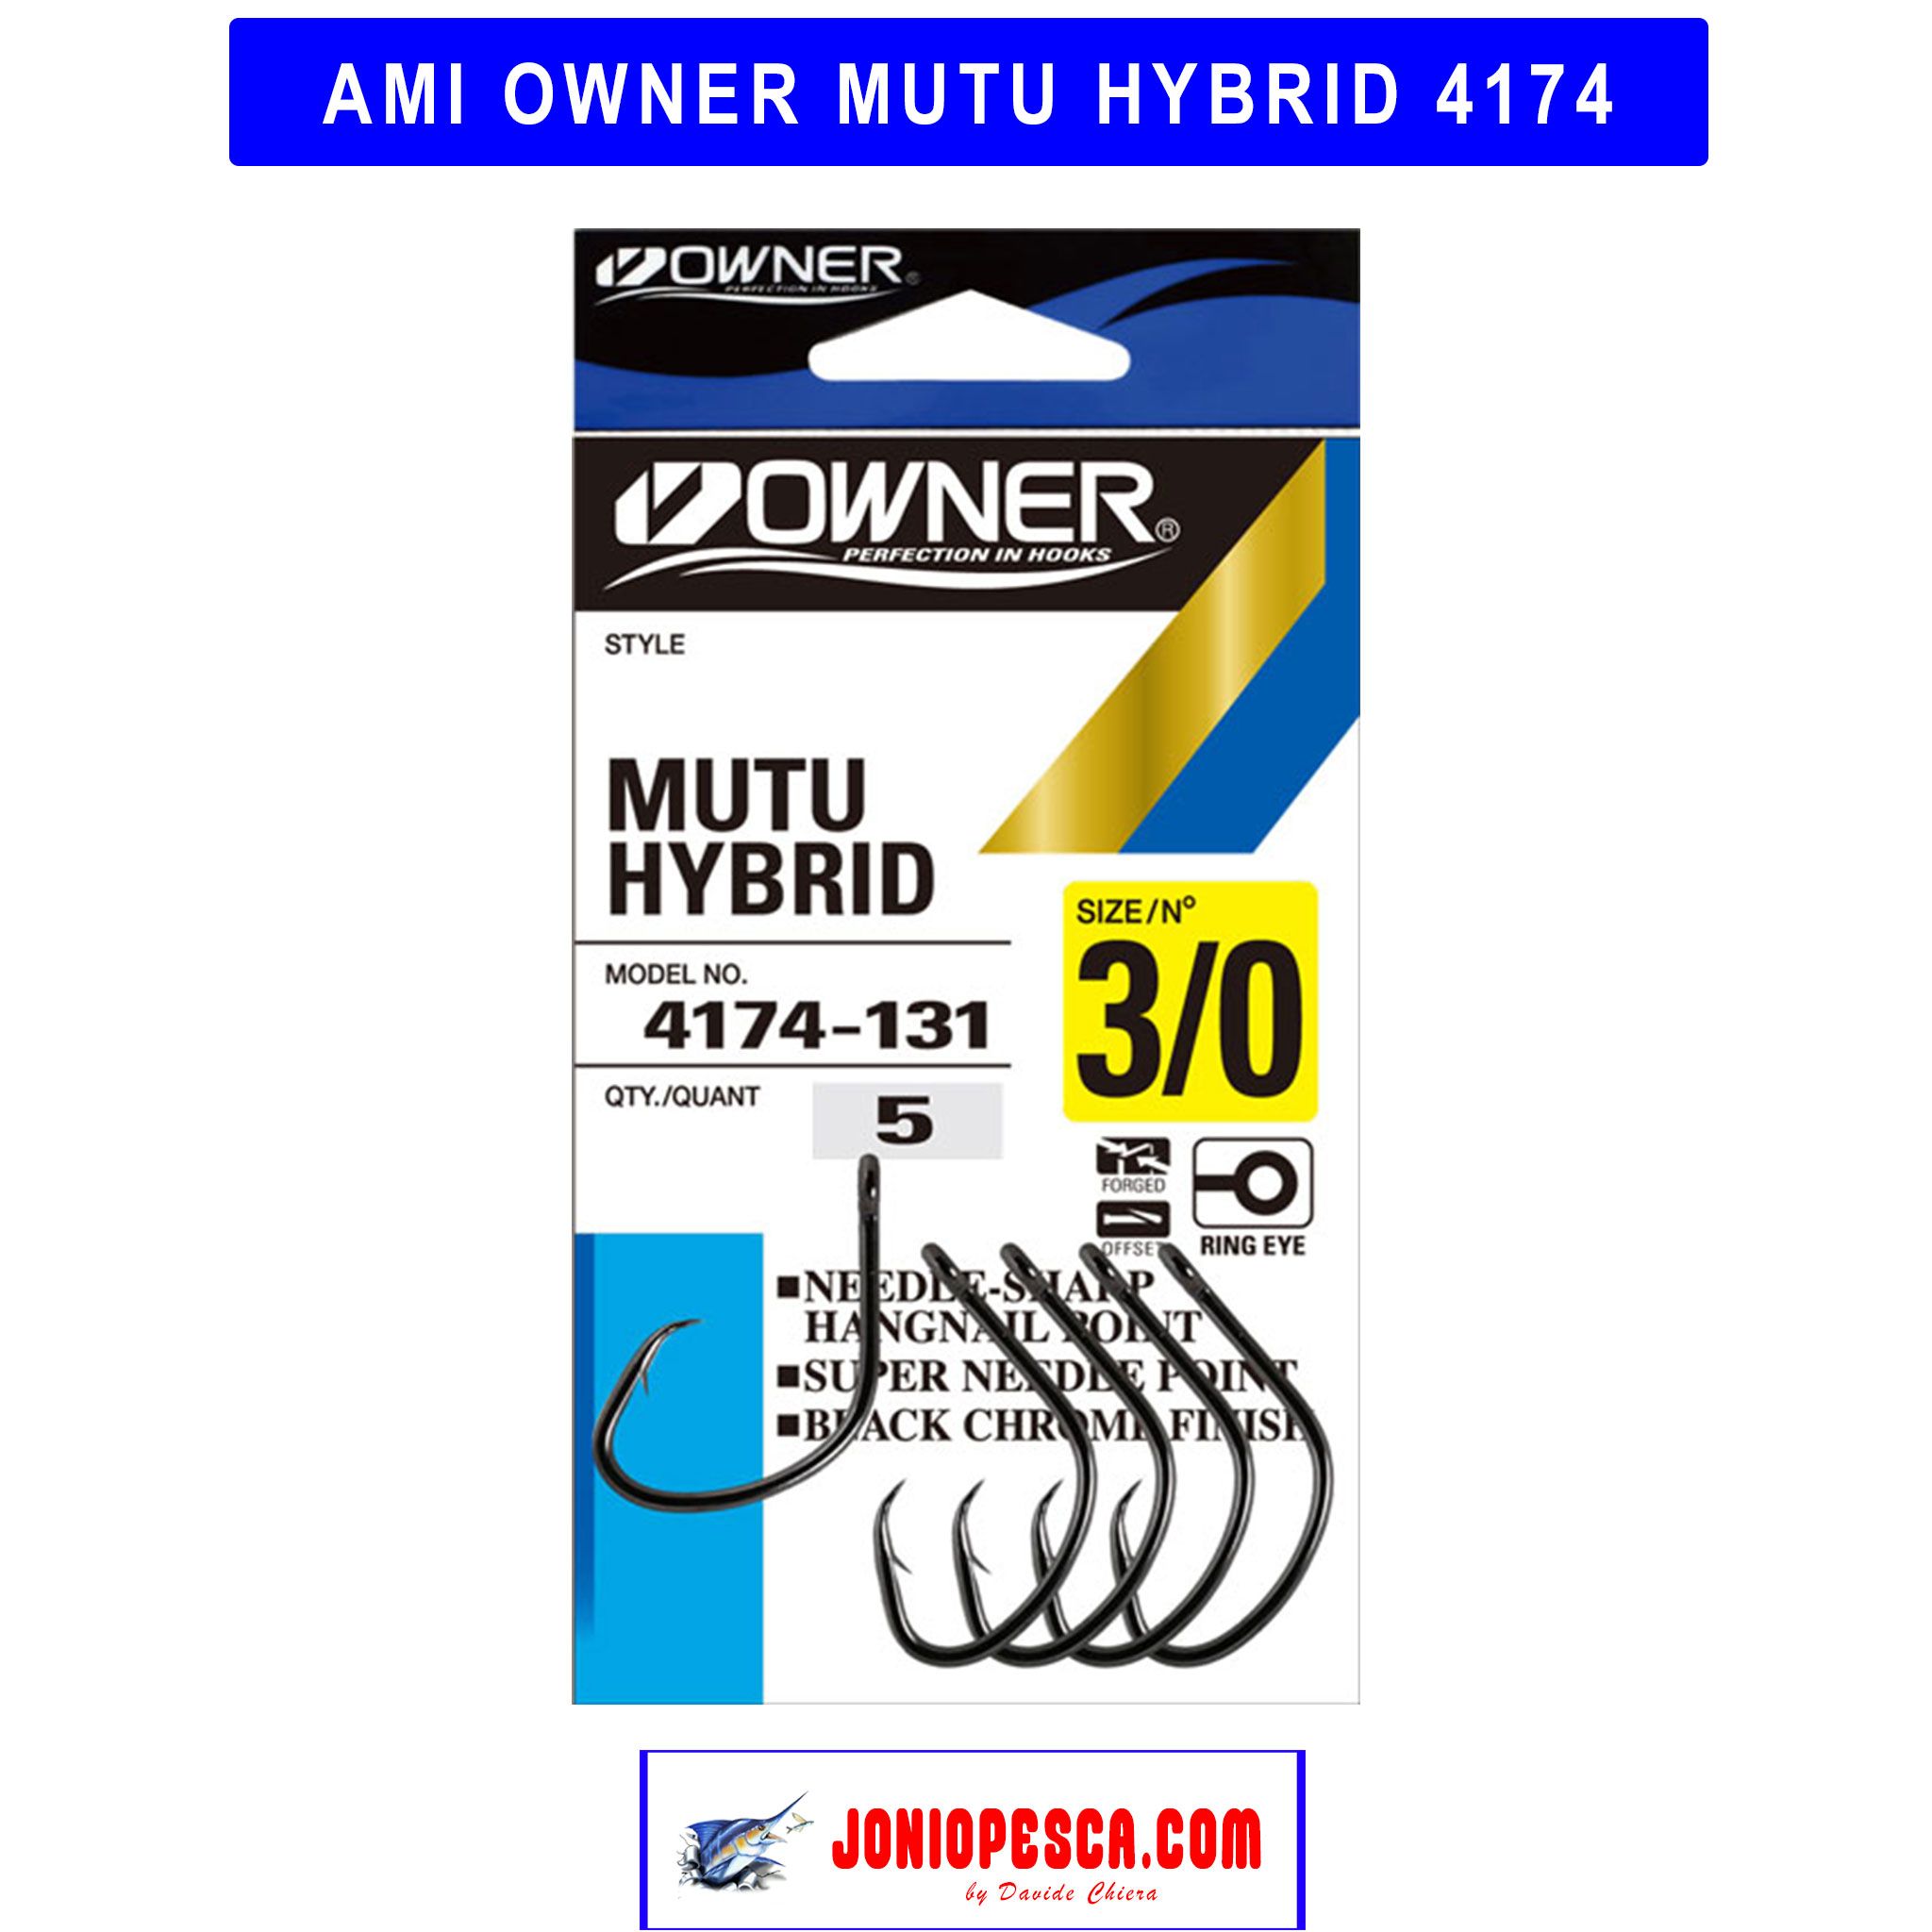 ami-owner-mutu-hybrid-4174